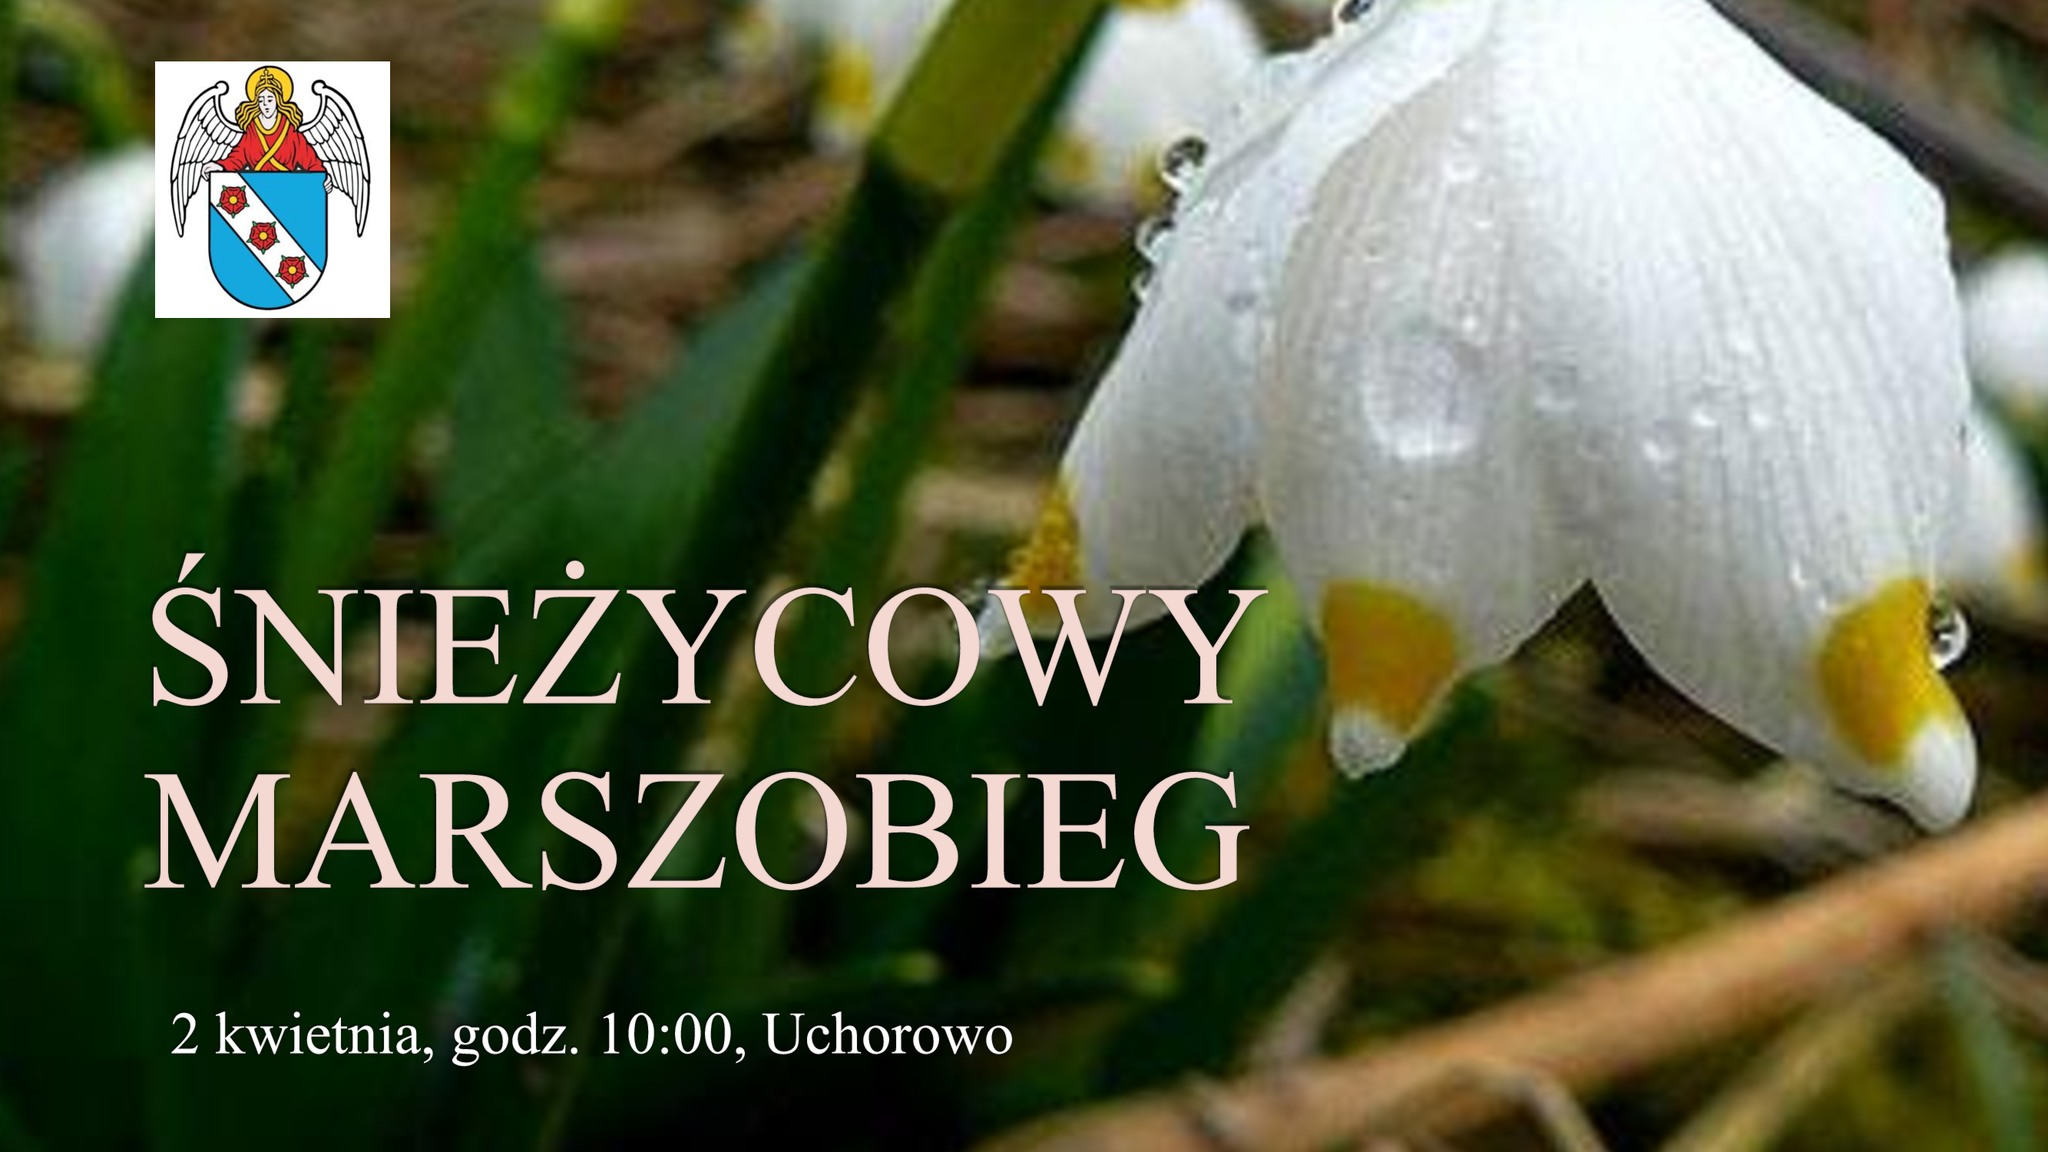 Śnieżycowy Marszobieg, 2 kwietnia, świetlica Uchorowo, godz. 10:00, zapisy promocja@murowana-goslina.pl